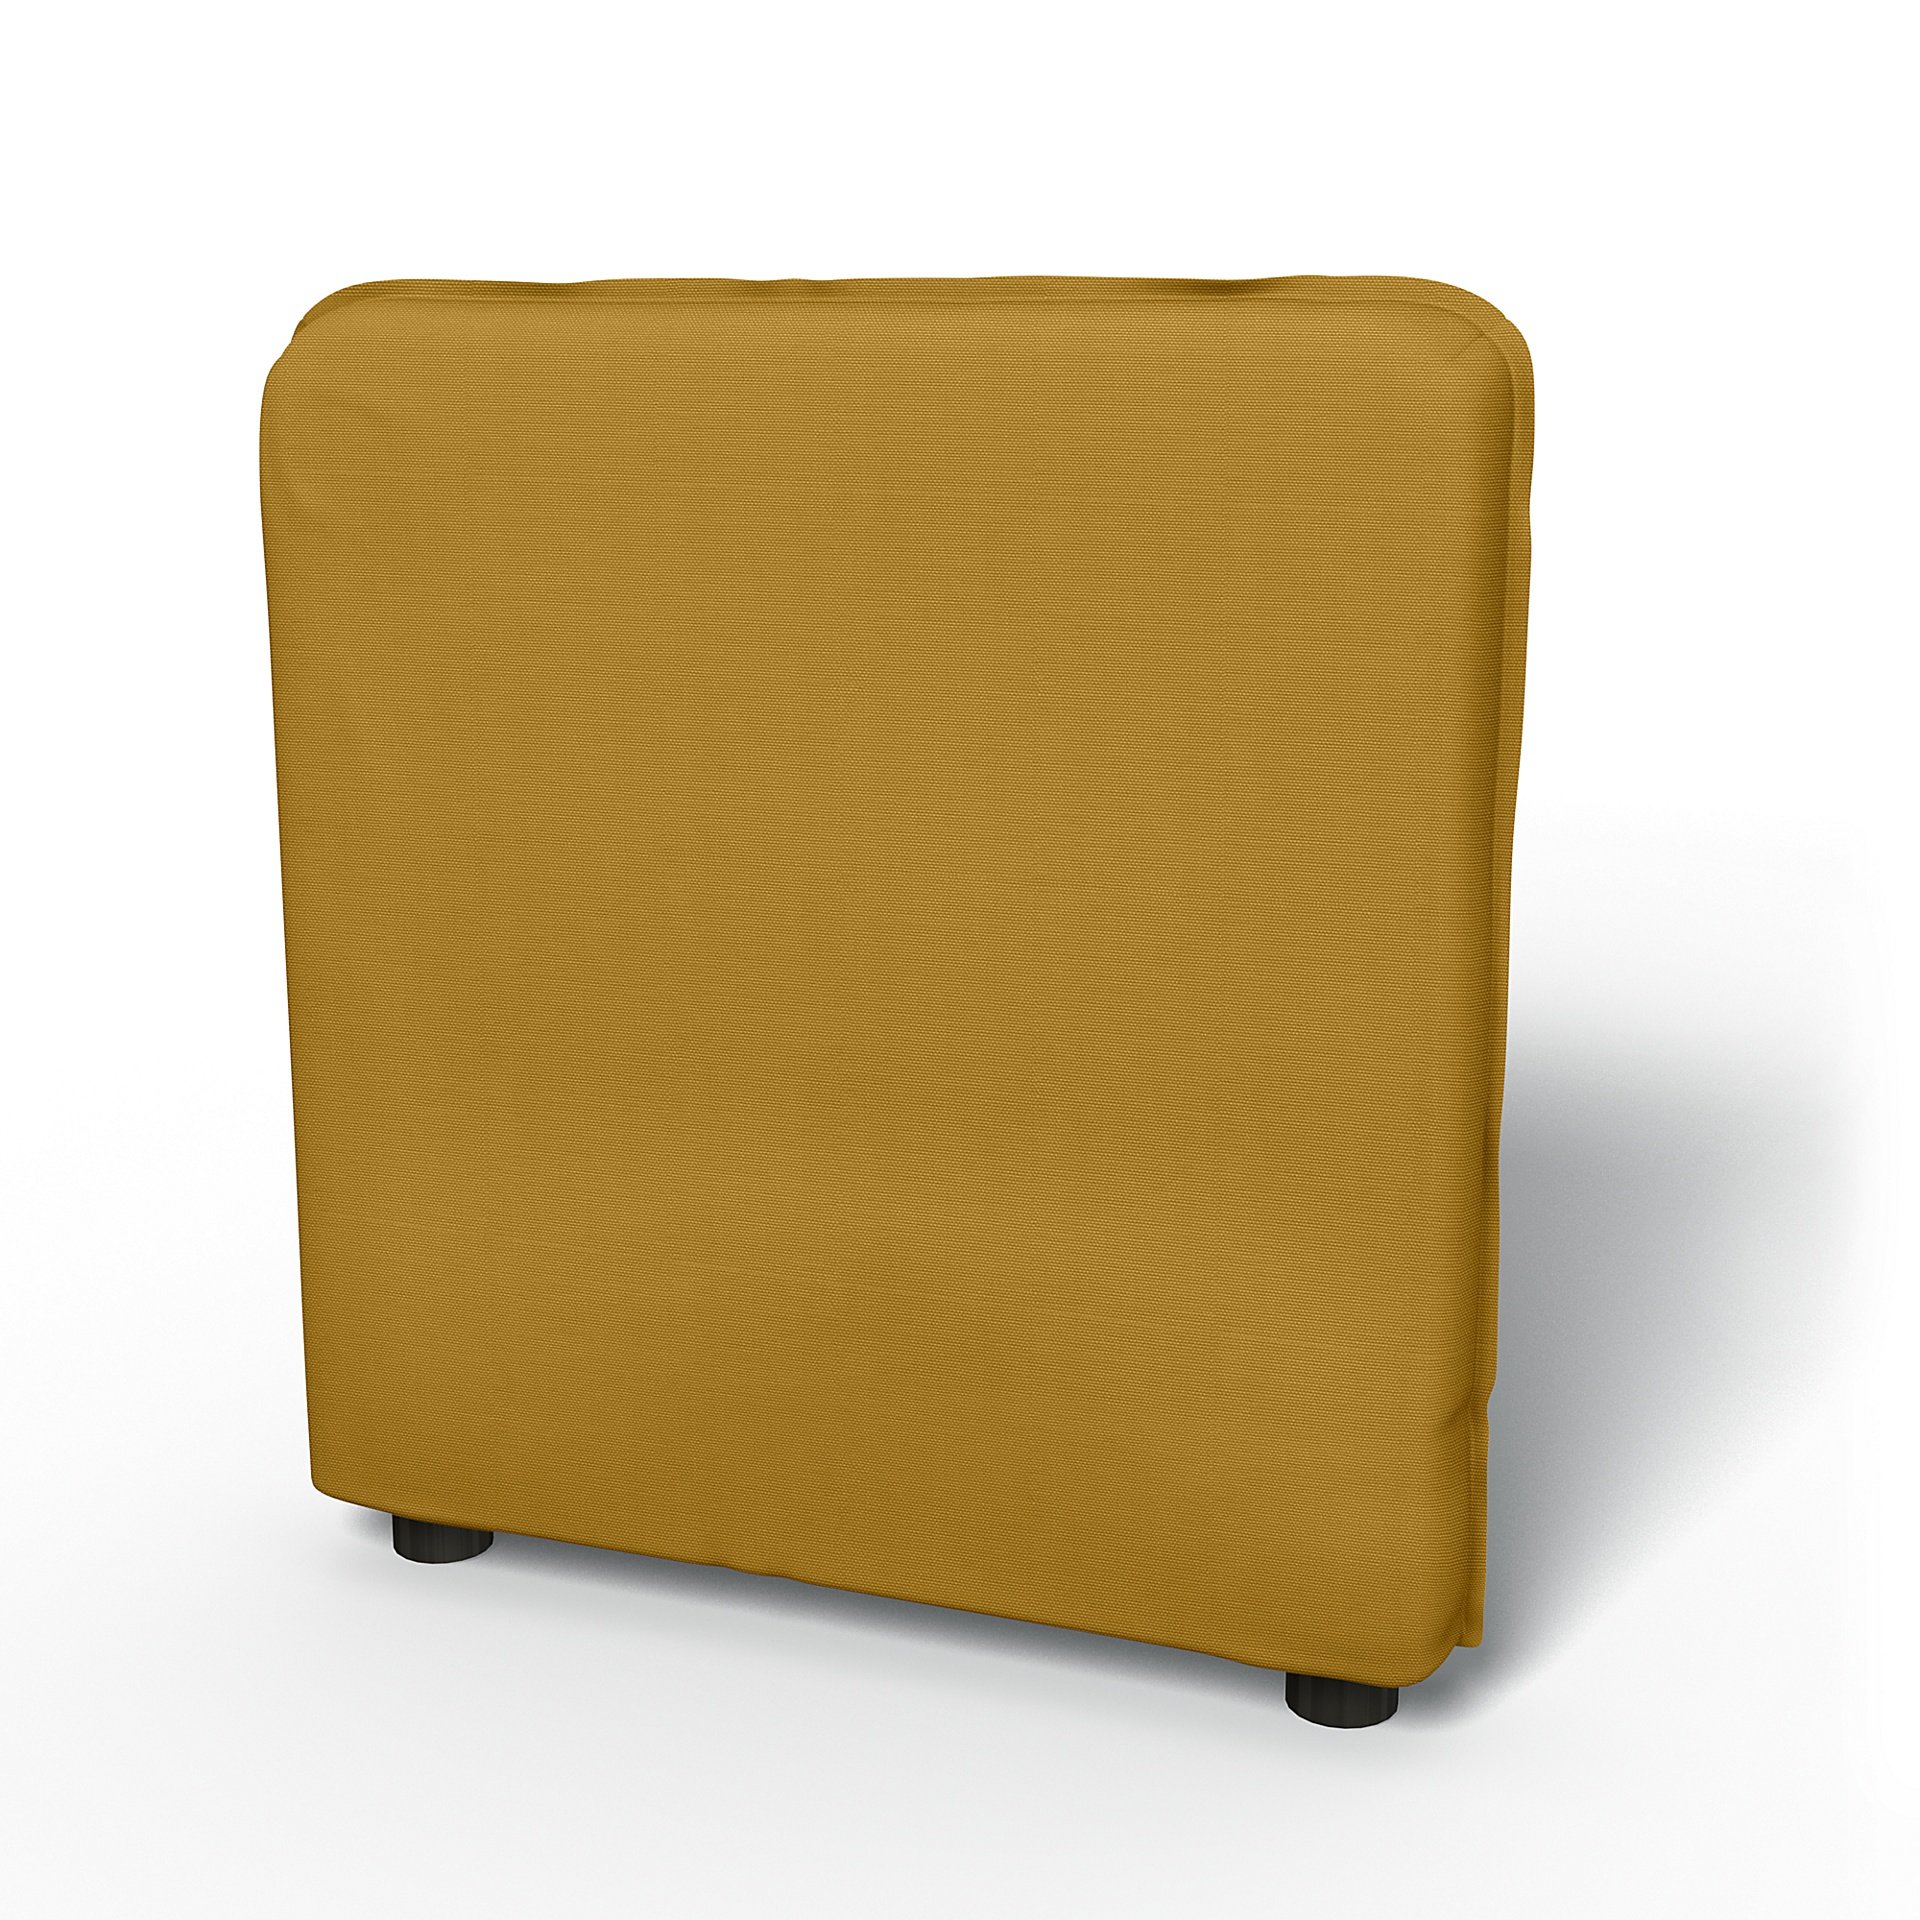 IKEA - Vallentuna Armrest Cover (80x60x13cm), Honey Mustard, Cotton - Bemz